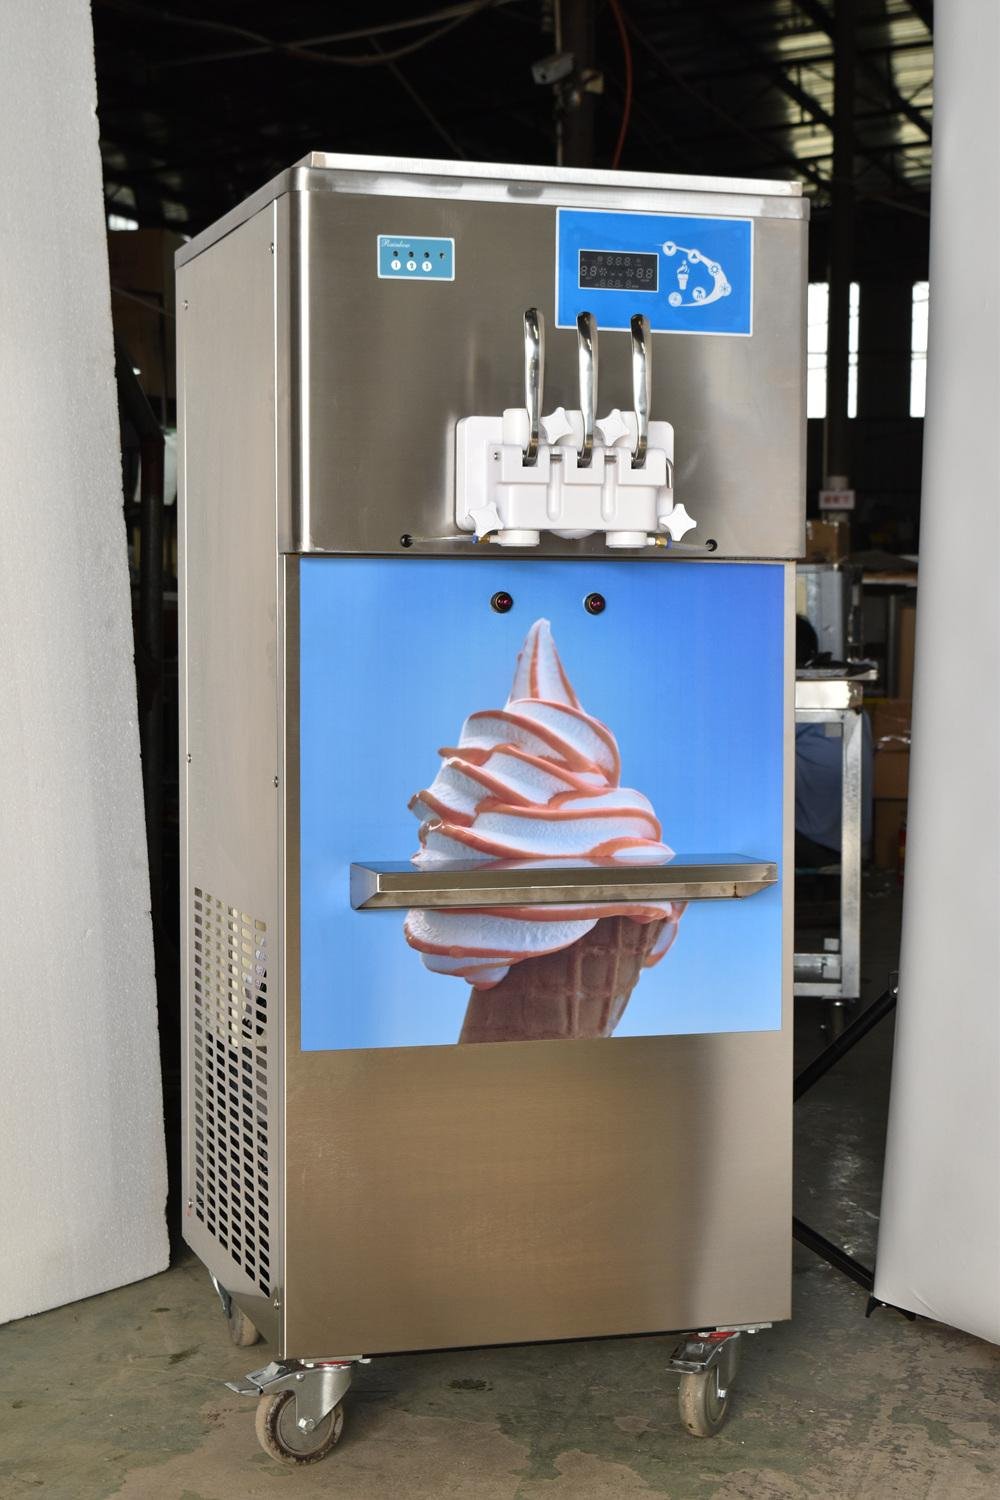 彩虹冰淇淋機 彩虹軟冰激凌機 商用立式軟冰淇淋機器 2